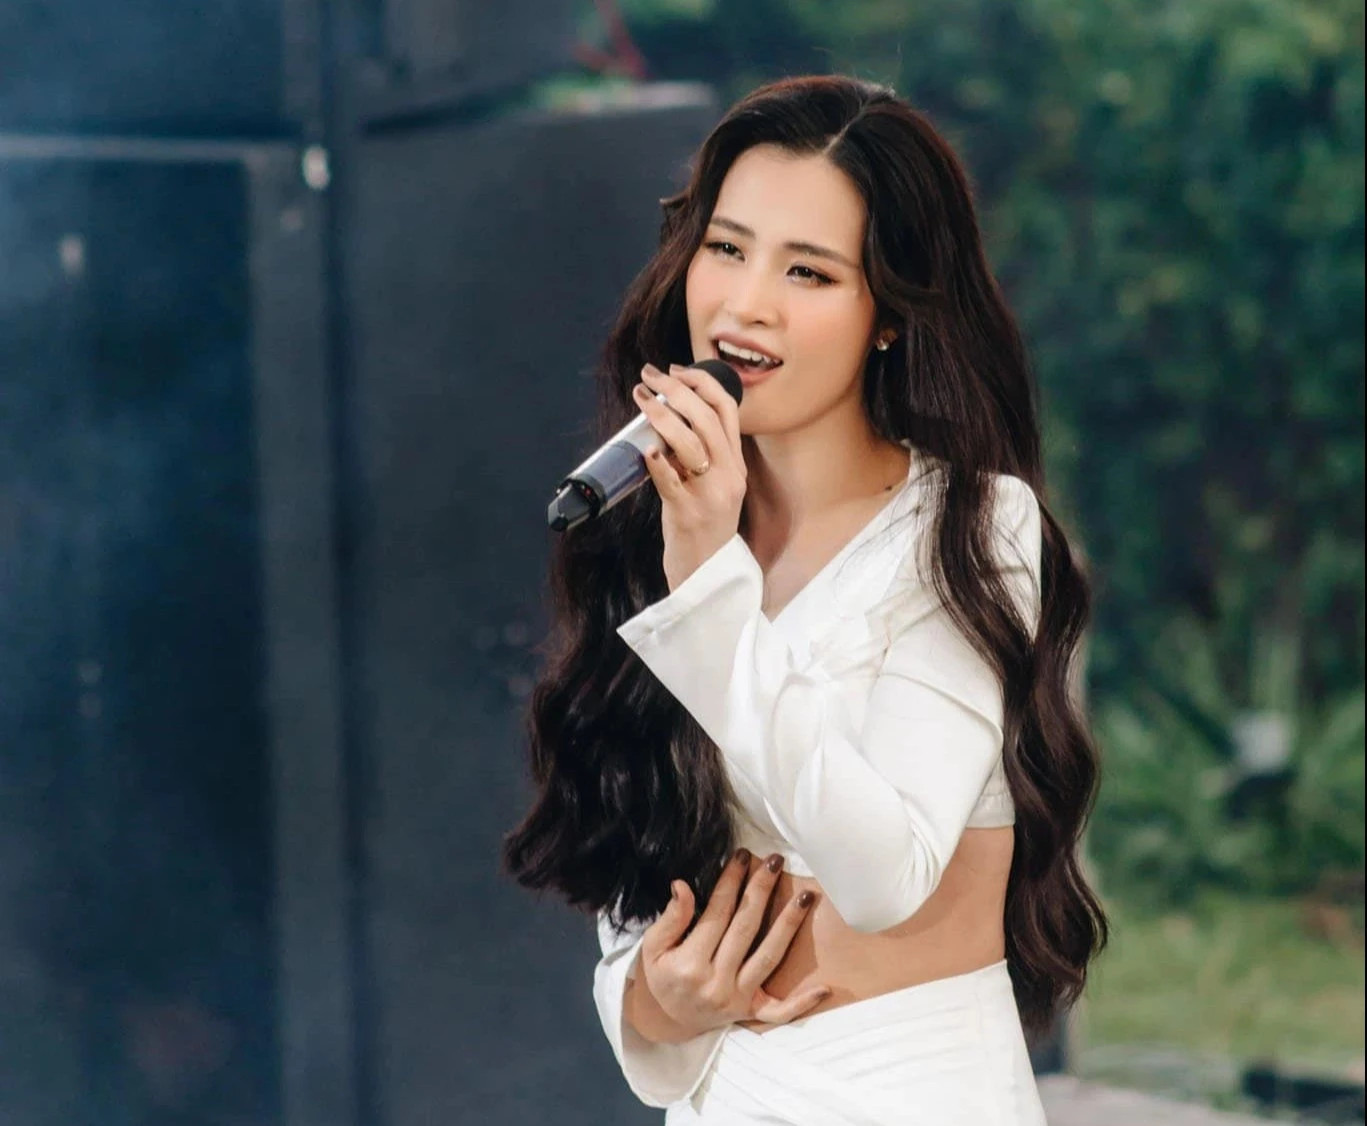 Trấn Thành tiết lộ từng tỏ tình một nữ ca sĩ Vbiz nhưng bị từ chối thẳng, netizen “soi” được danh tính - ảnh 6